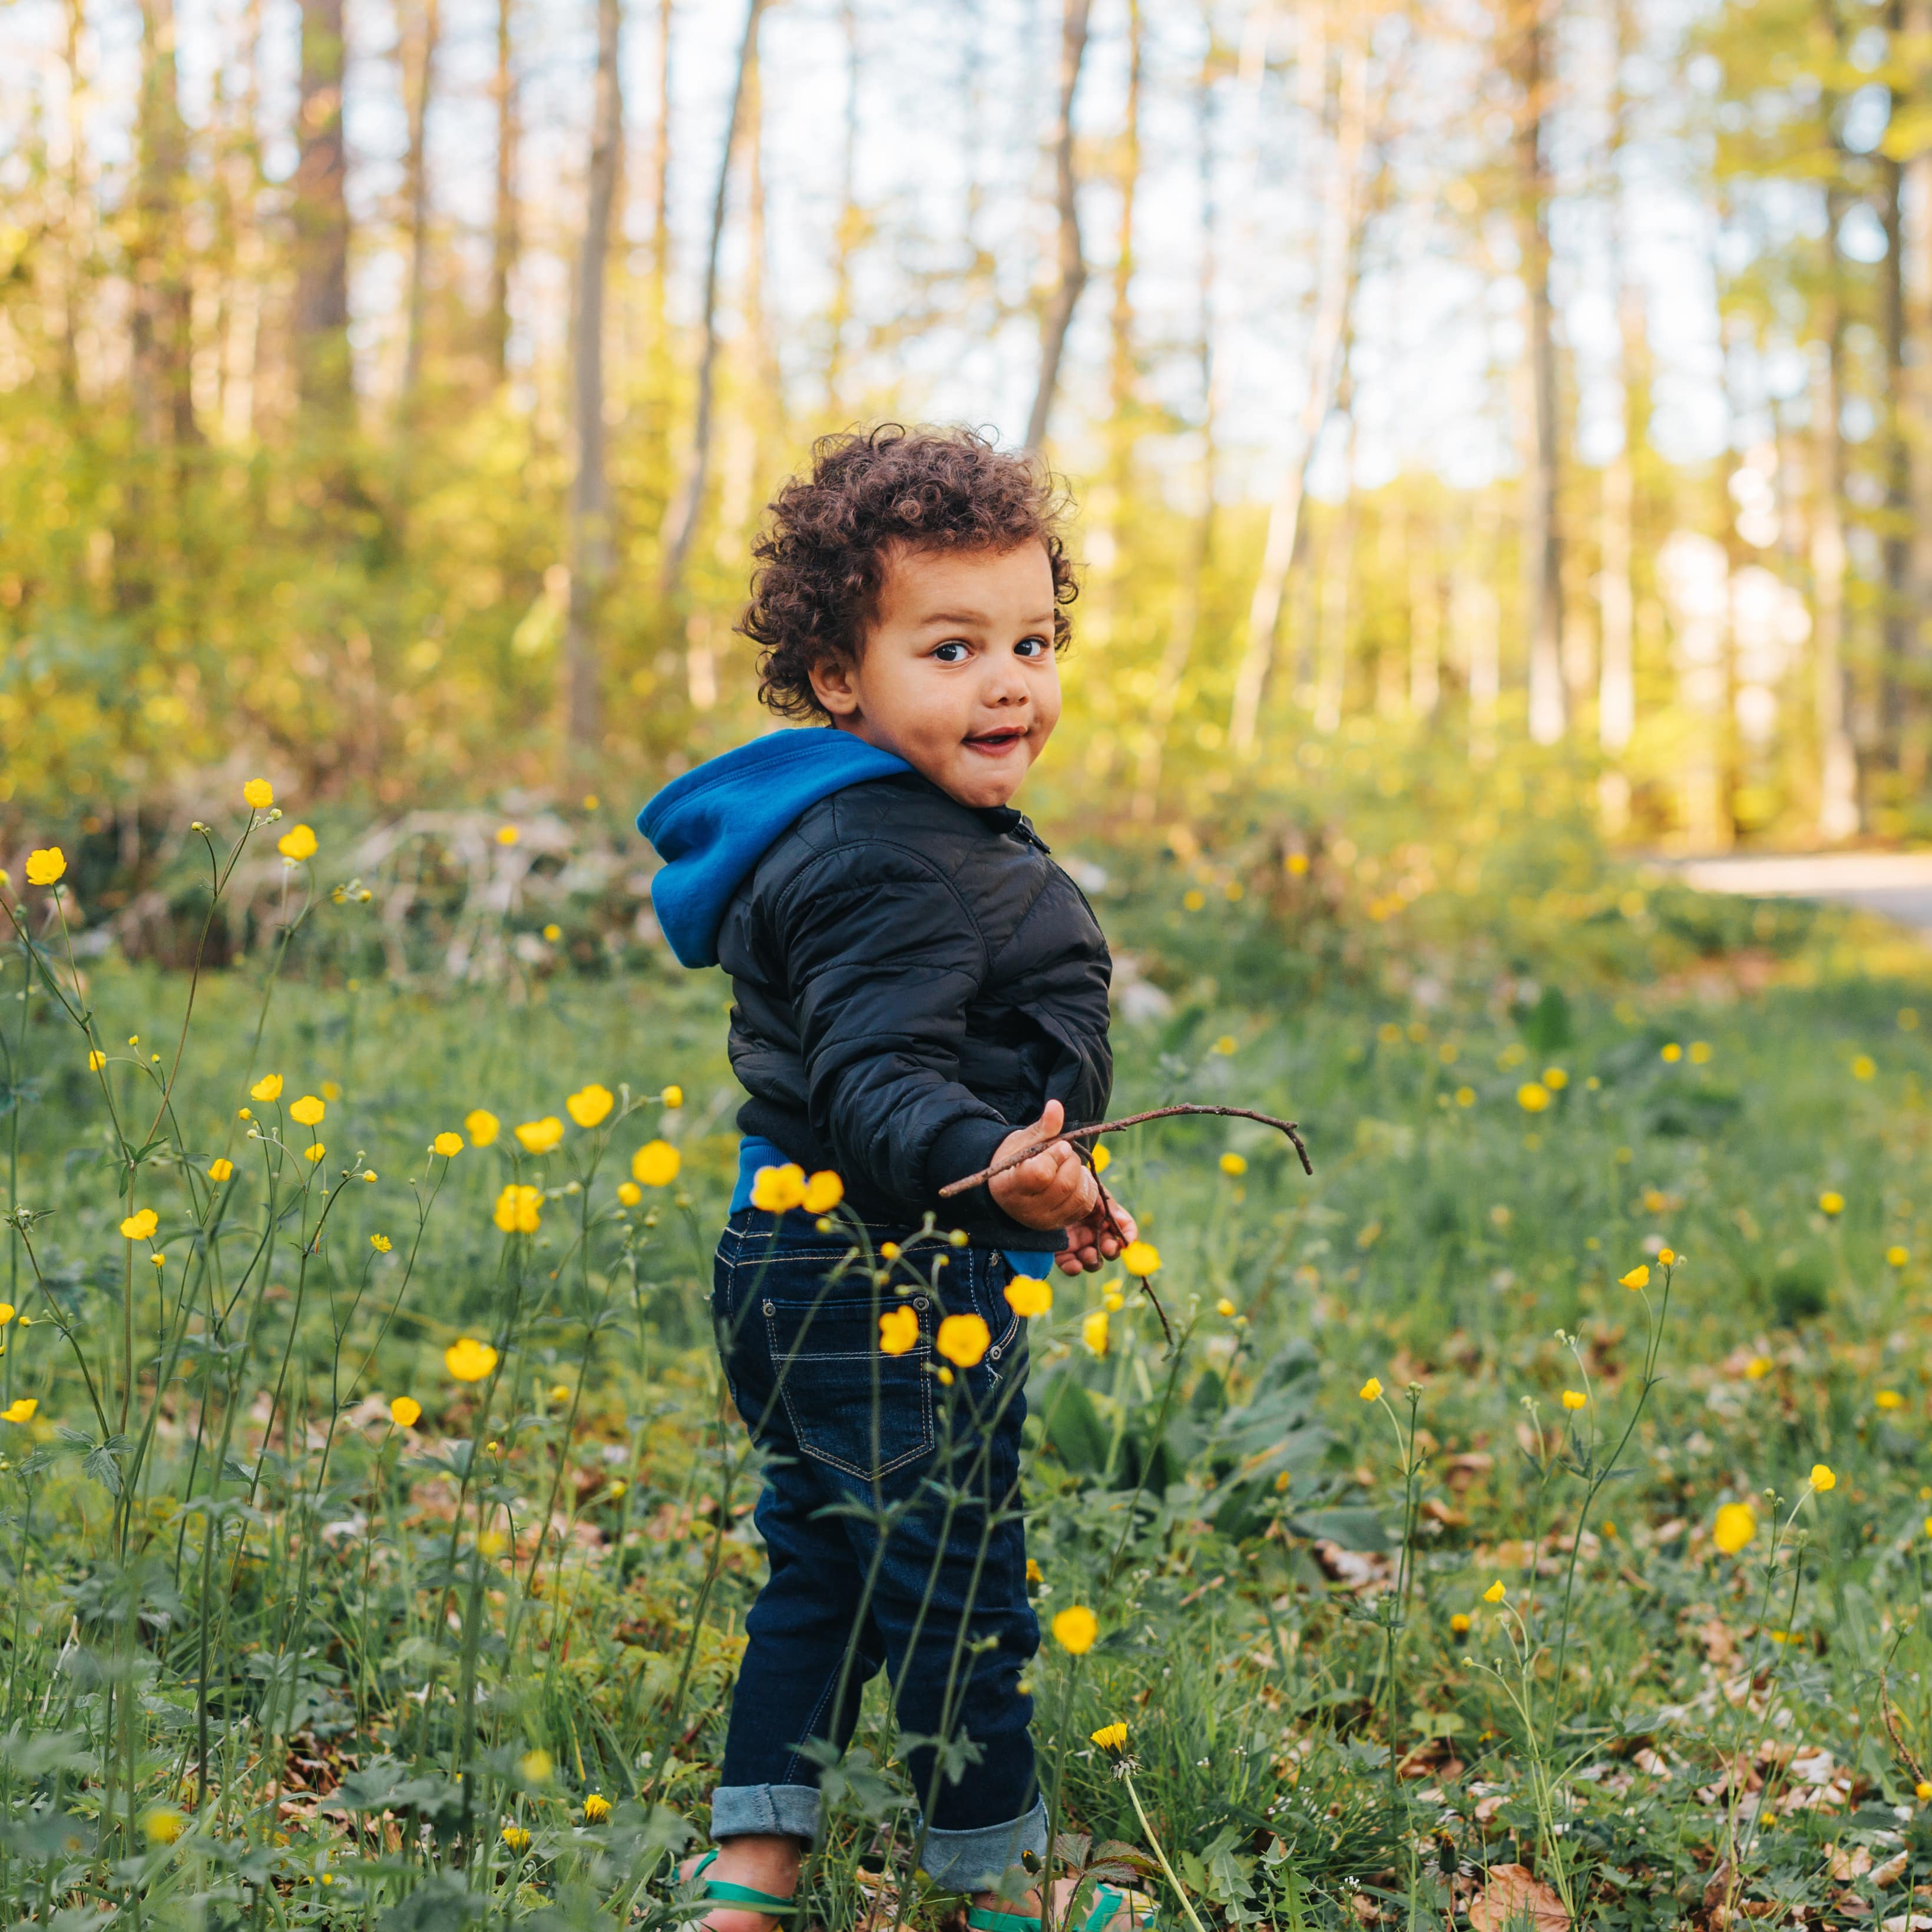 Kleiner Junge in Jeans und Jacke zwischen blühenden Blumen im Wald. Er schaut in die Kamera.